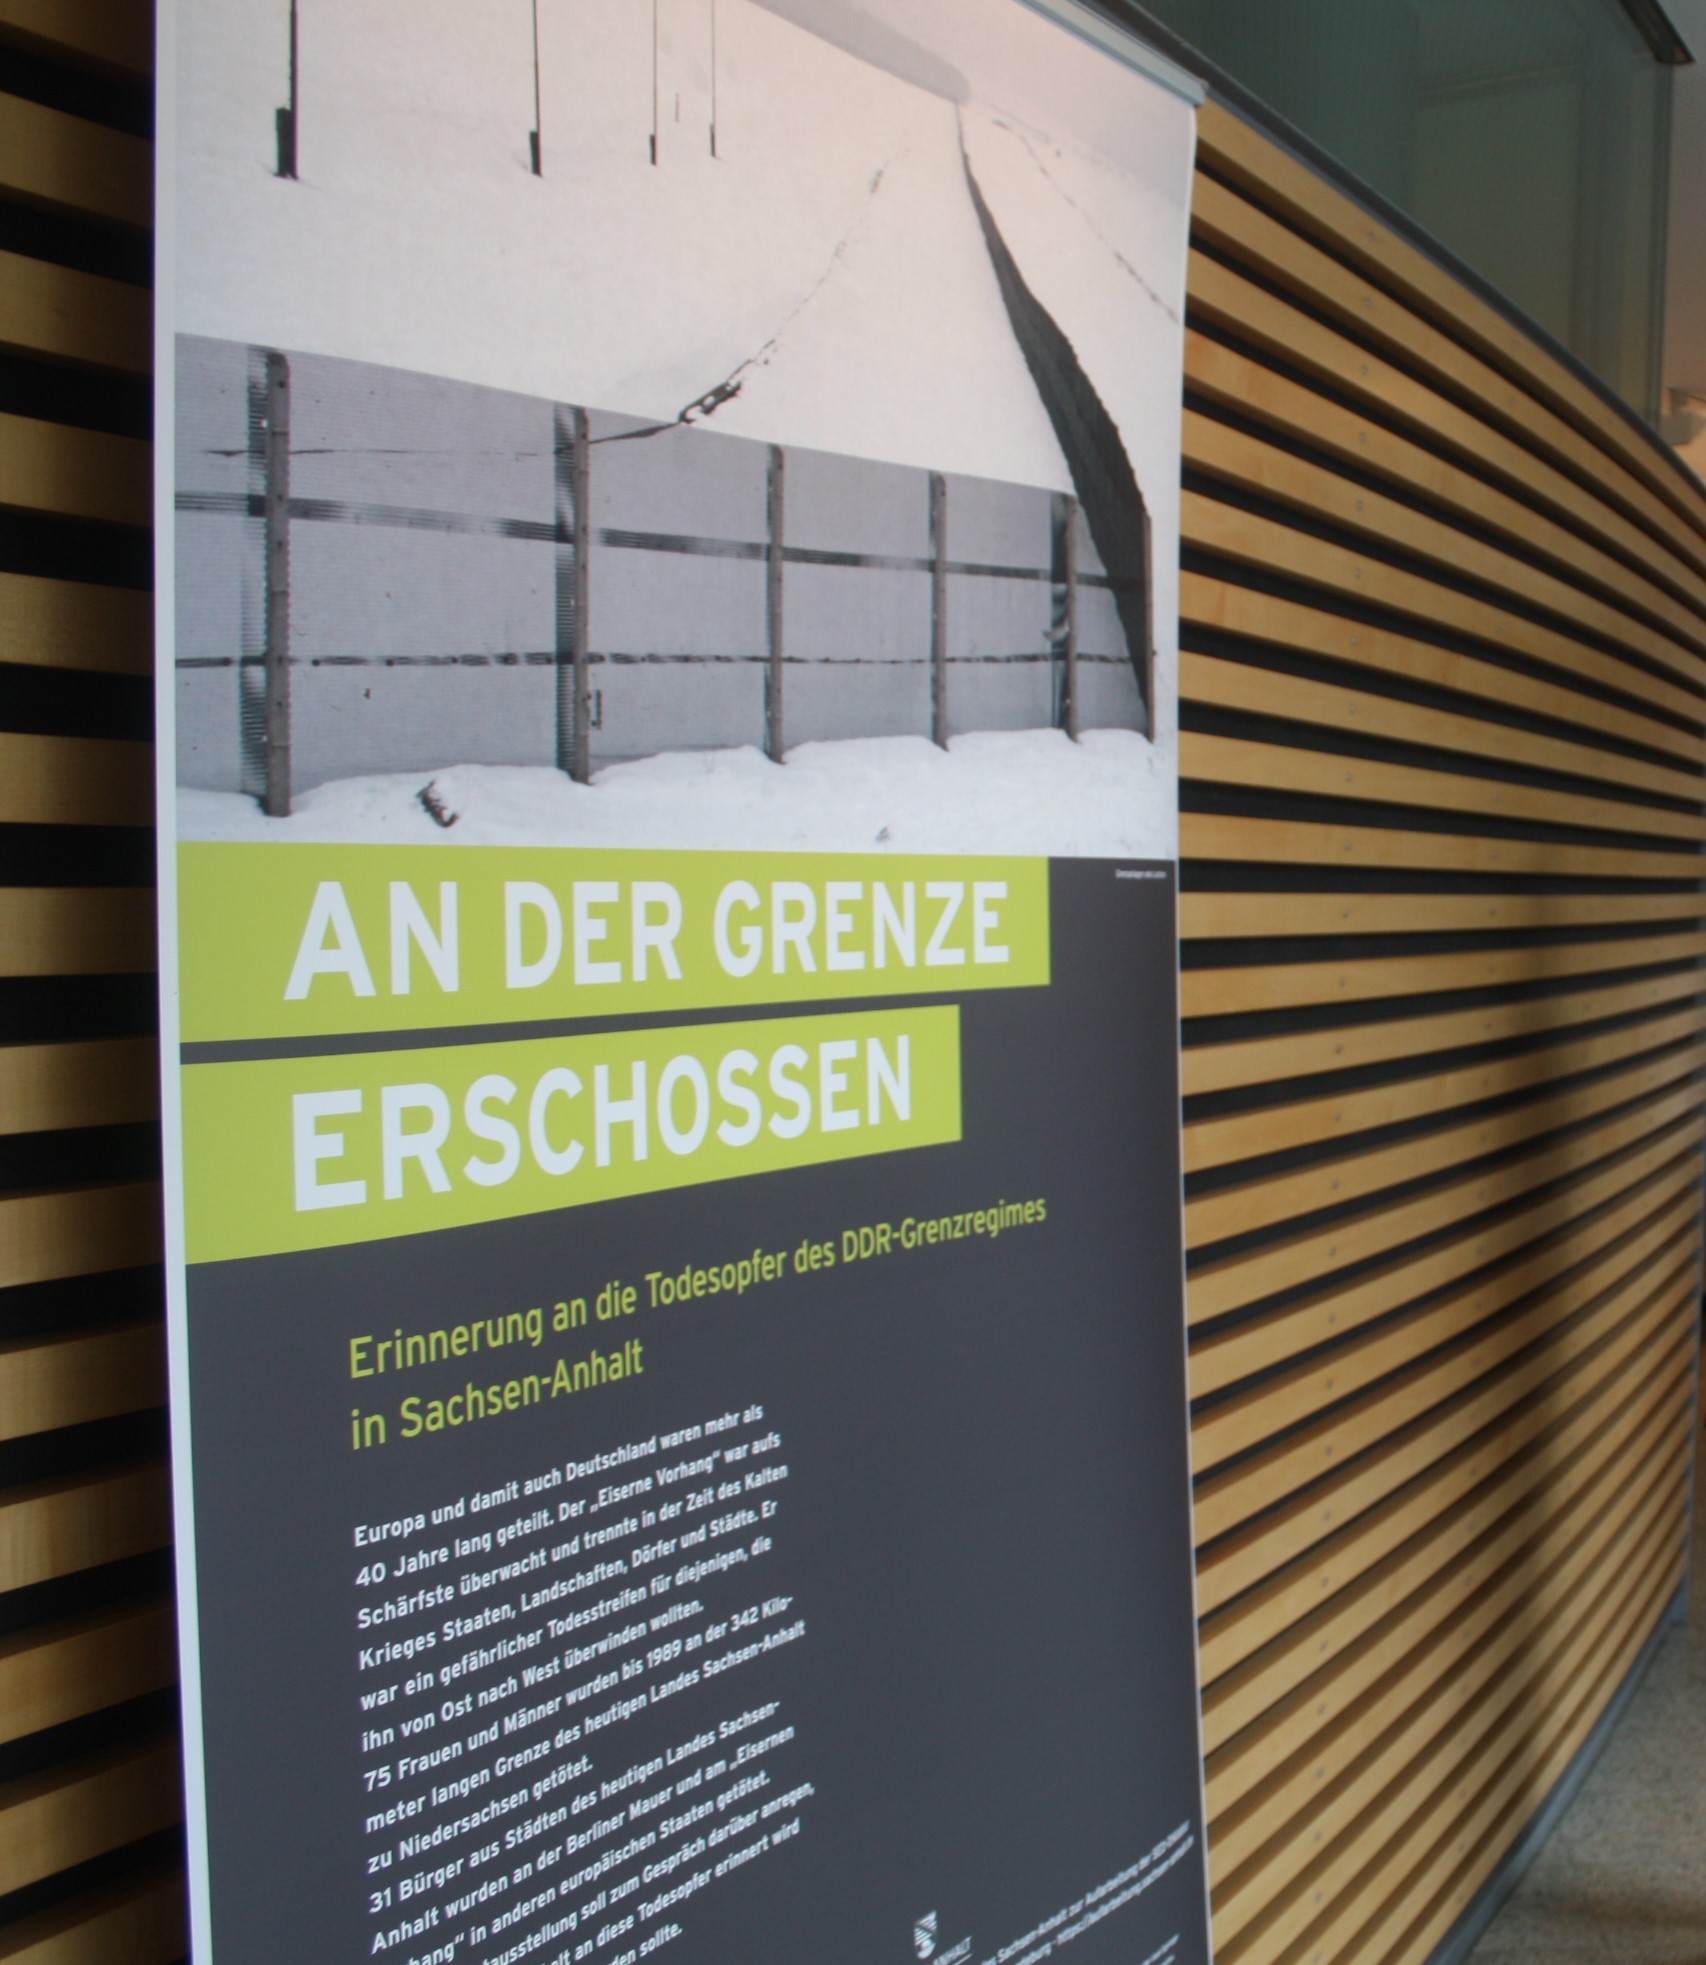 Wanderausstellung „An der Grenze erschossen. Erinnerung an die Todesopfer des DDR-Grenzregimes in Sachsen-Anhalt“